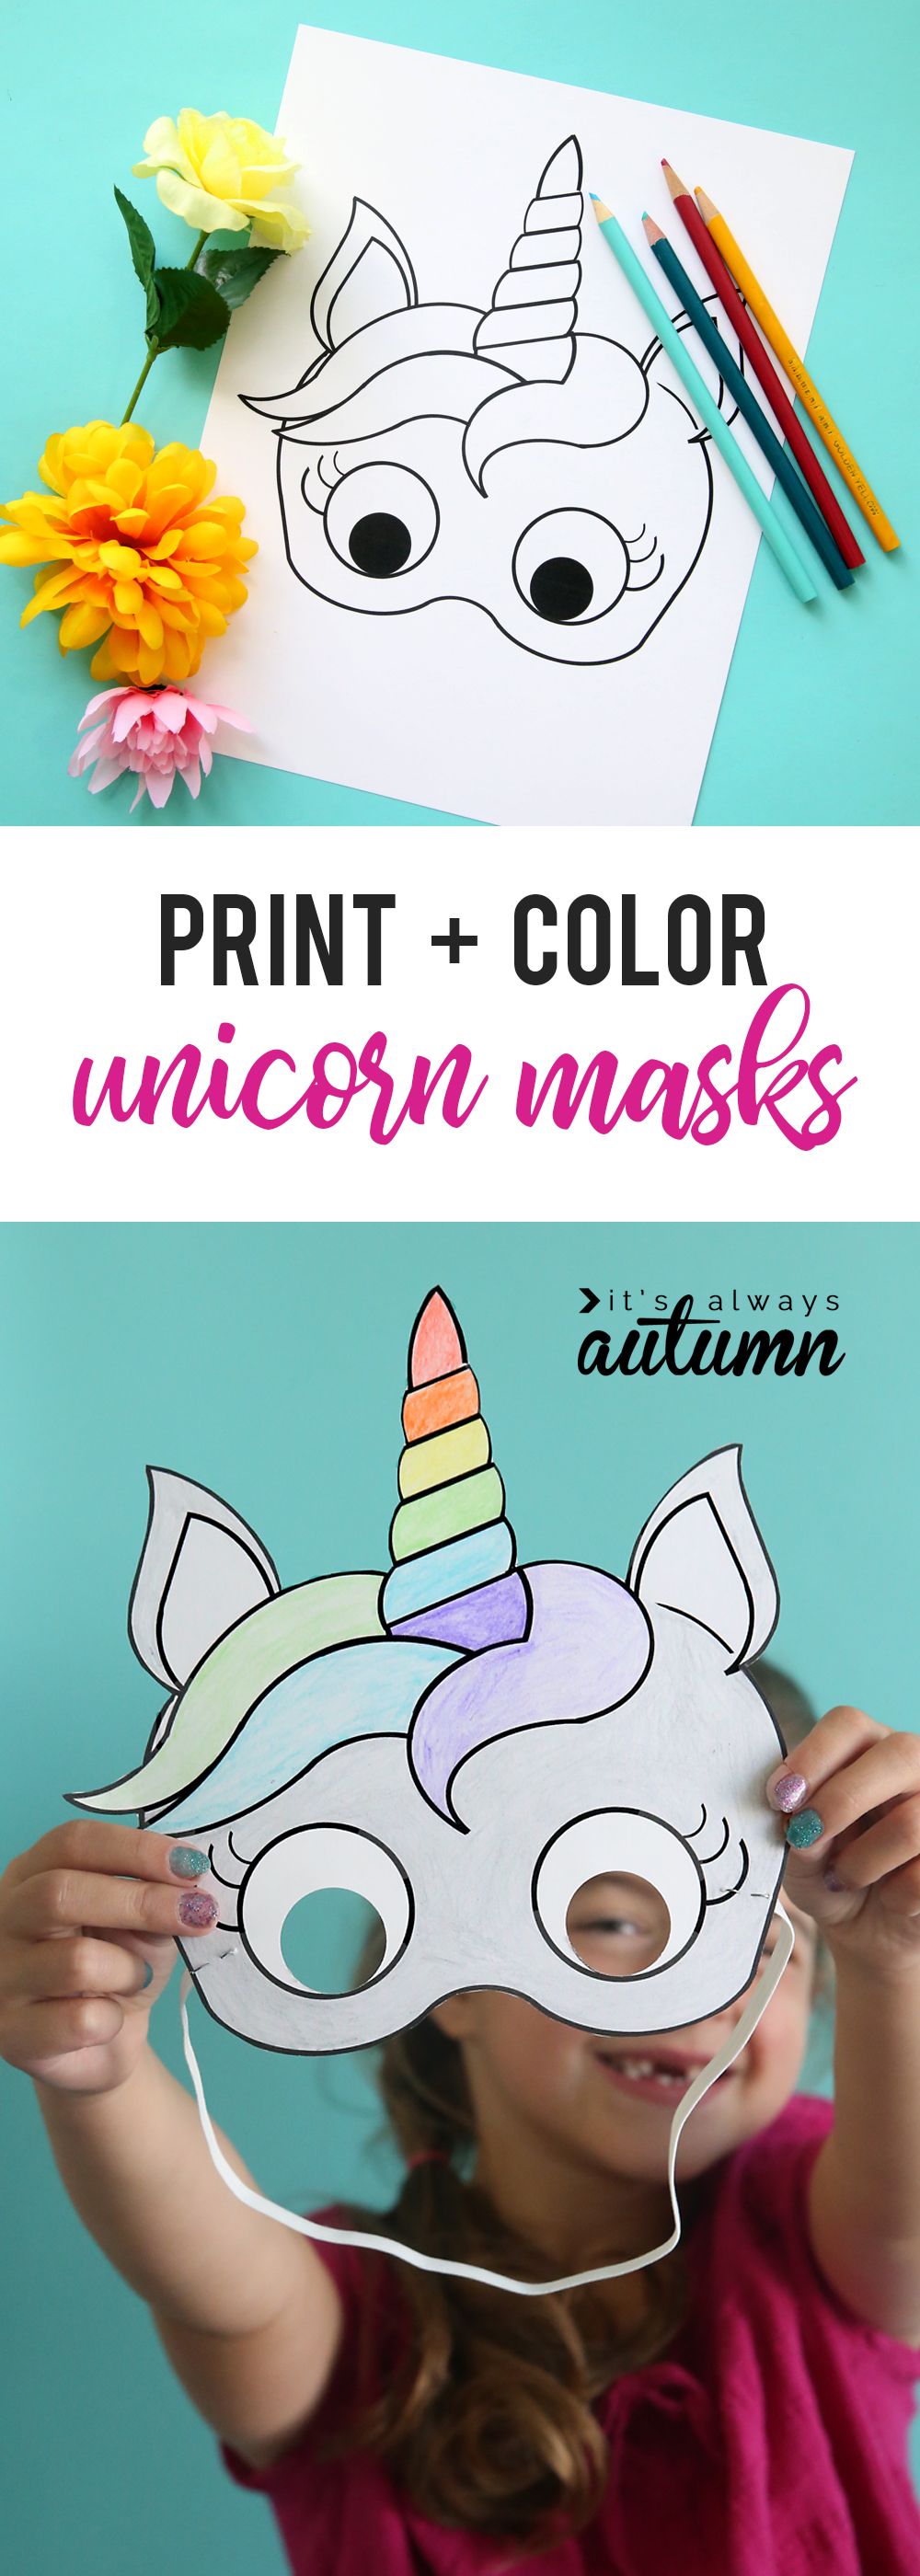 Unicorn masks to print and color free printable